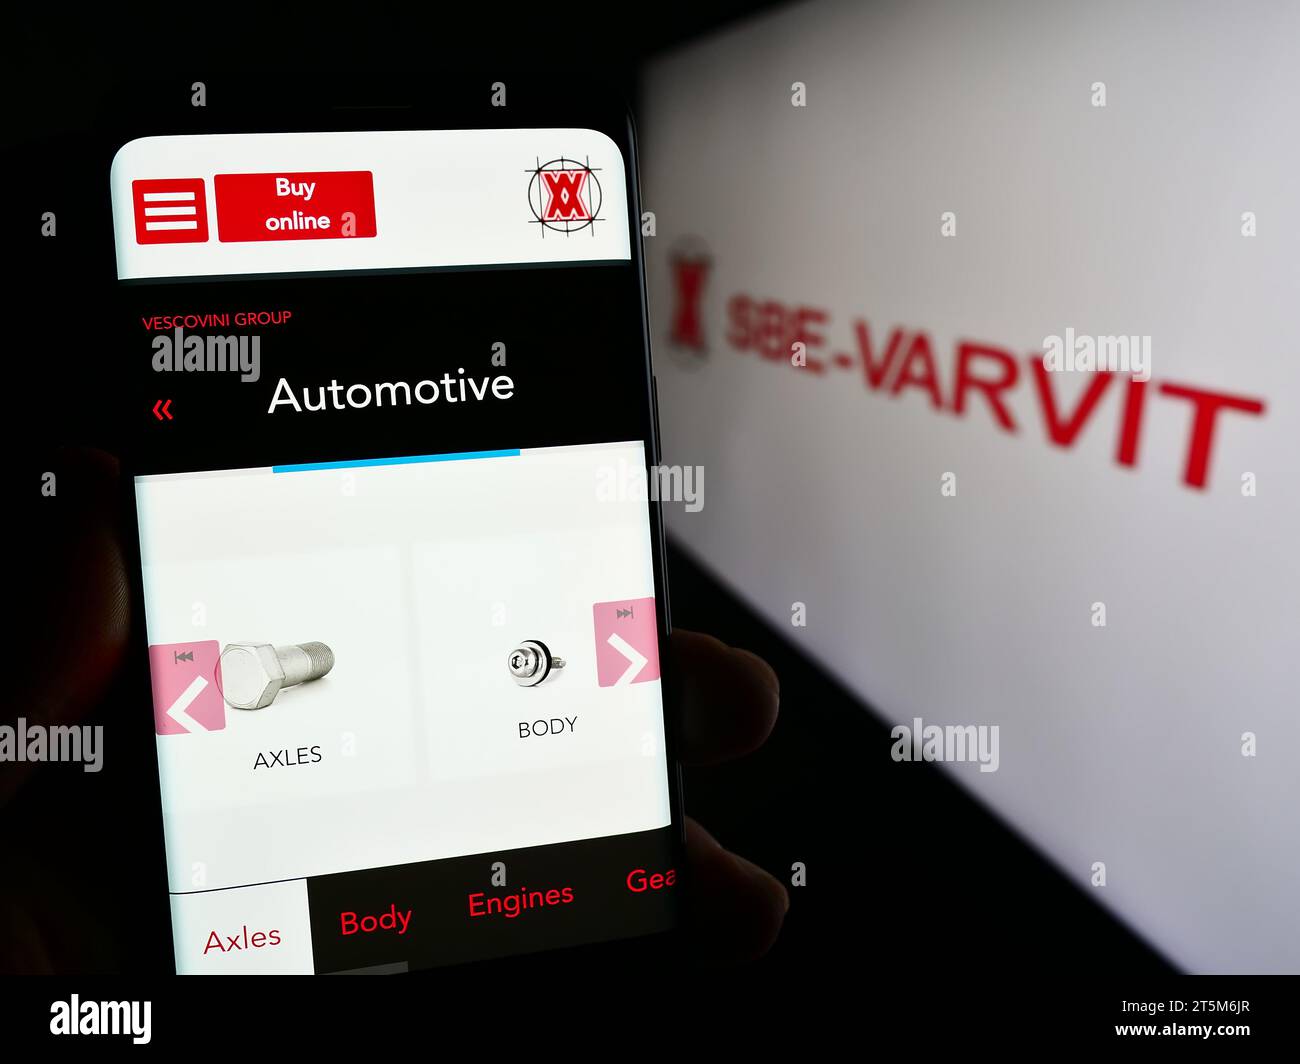 Personne détenant un téléphone portable avec une page web de la société italienne de fixation mécanique SBE-VARVIT S.p.A. avec logo. Concentrez-vous sur le centre de l'écran du téléphone. Banque D'Images